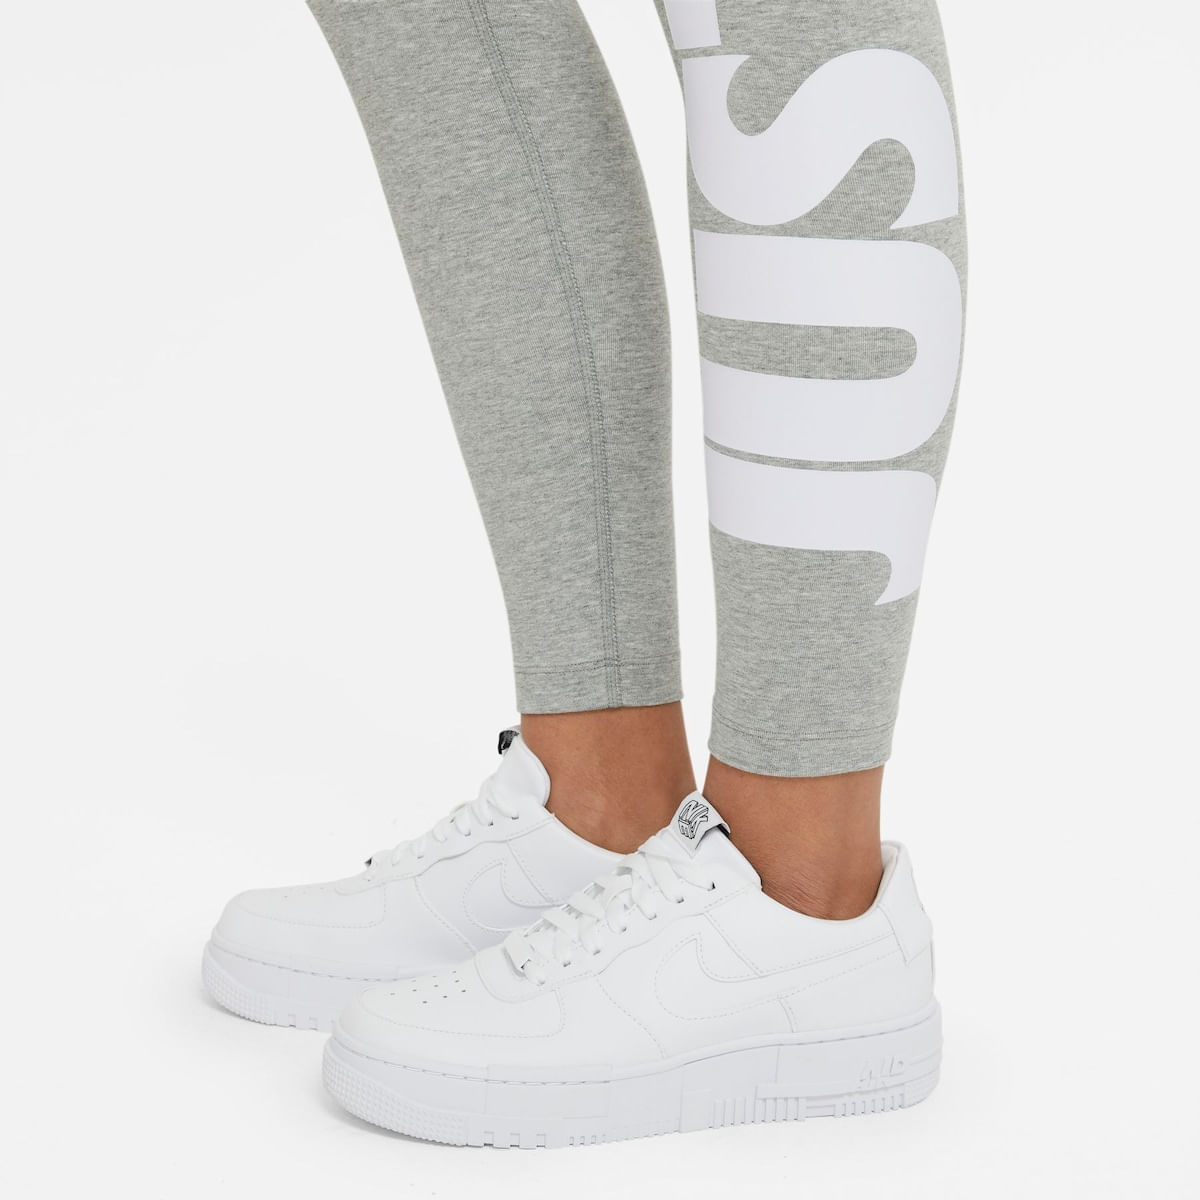 Legging Nike Sportswear Just Do It Feminina - Preto+Branco